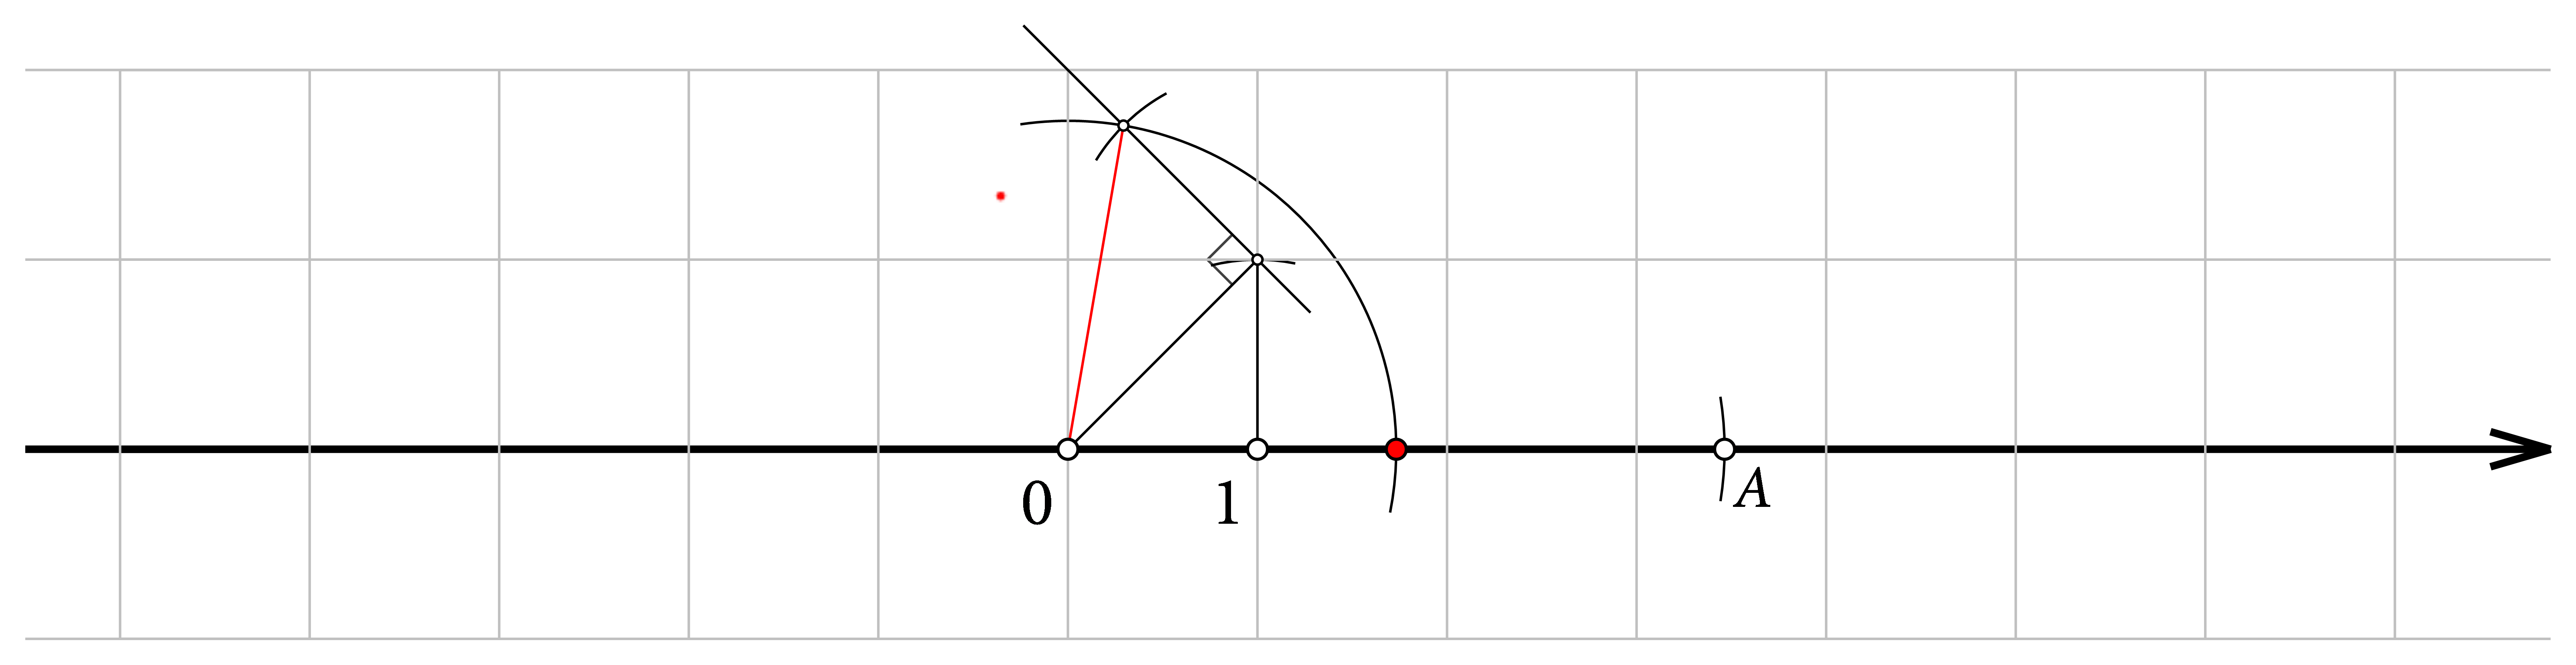 Na brojevnom pravcu prikazana je konstrukcija korijena iz 3. Ta je udaljenost prenesena 2 puta udesno od ishodišta.